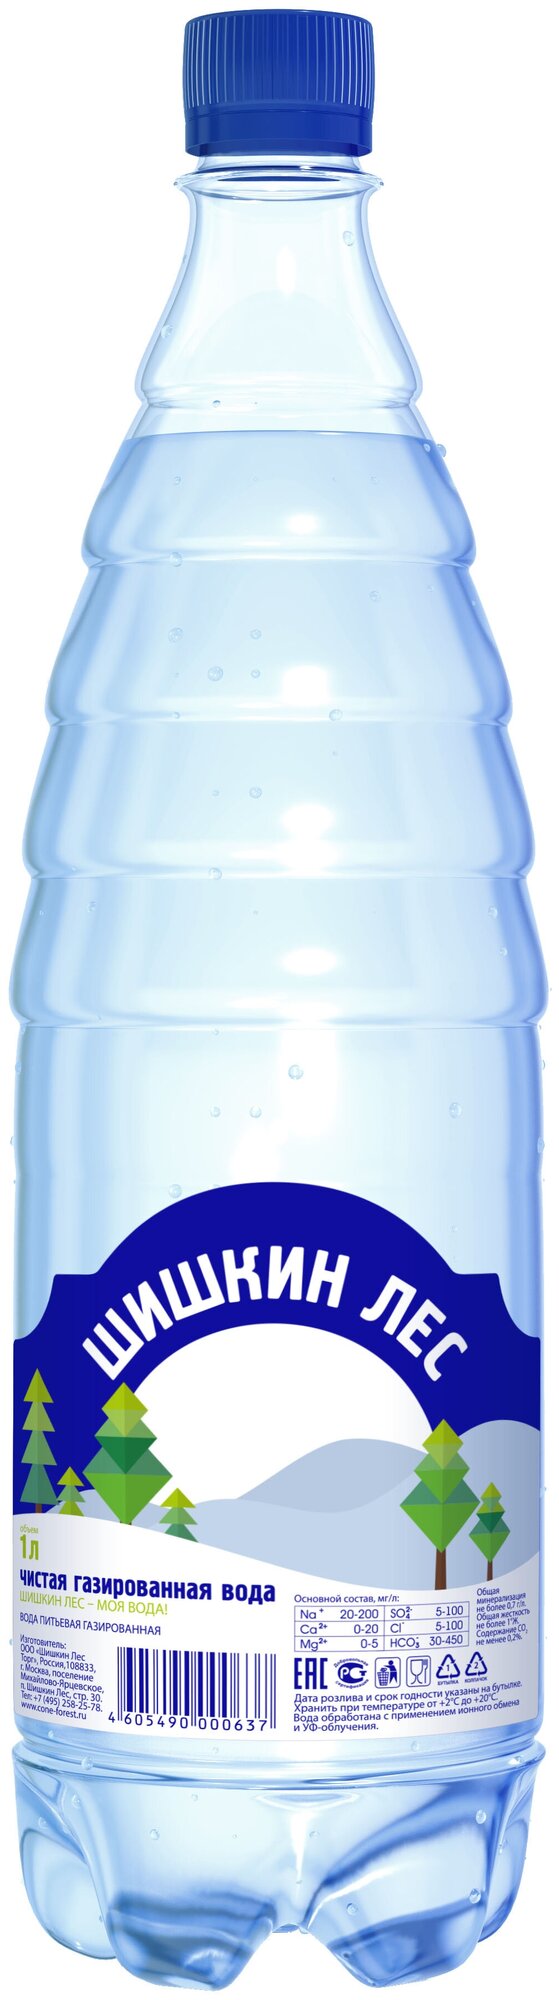 Вода газированная Шишкин Лес питьевая